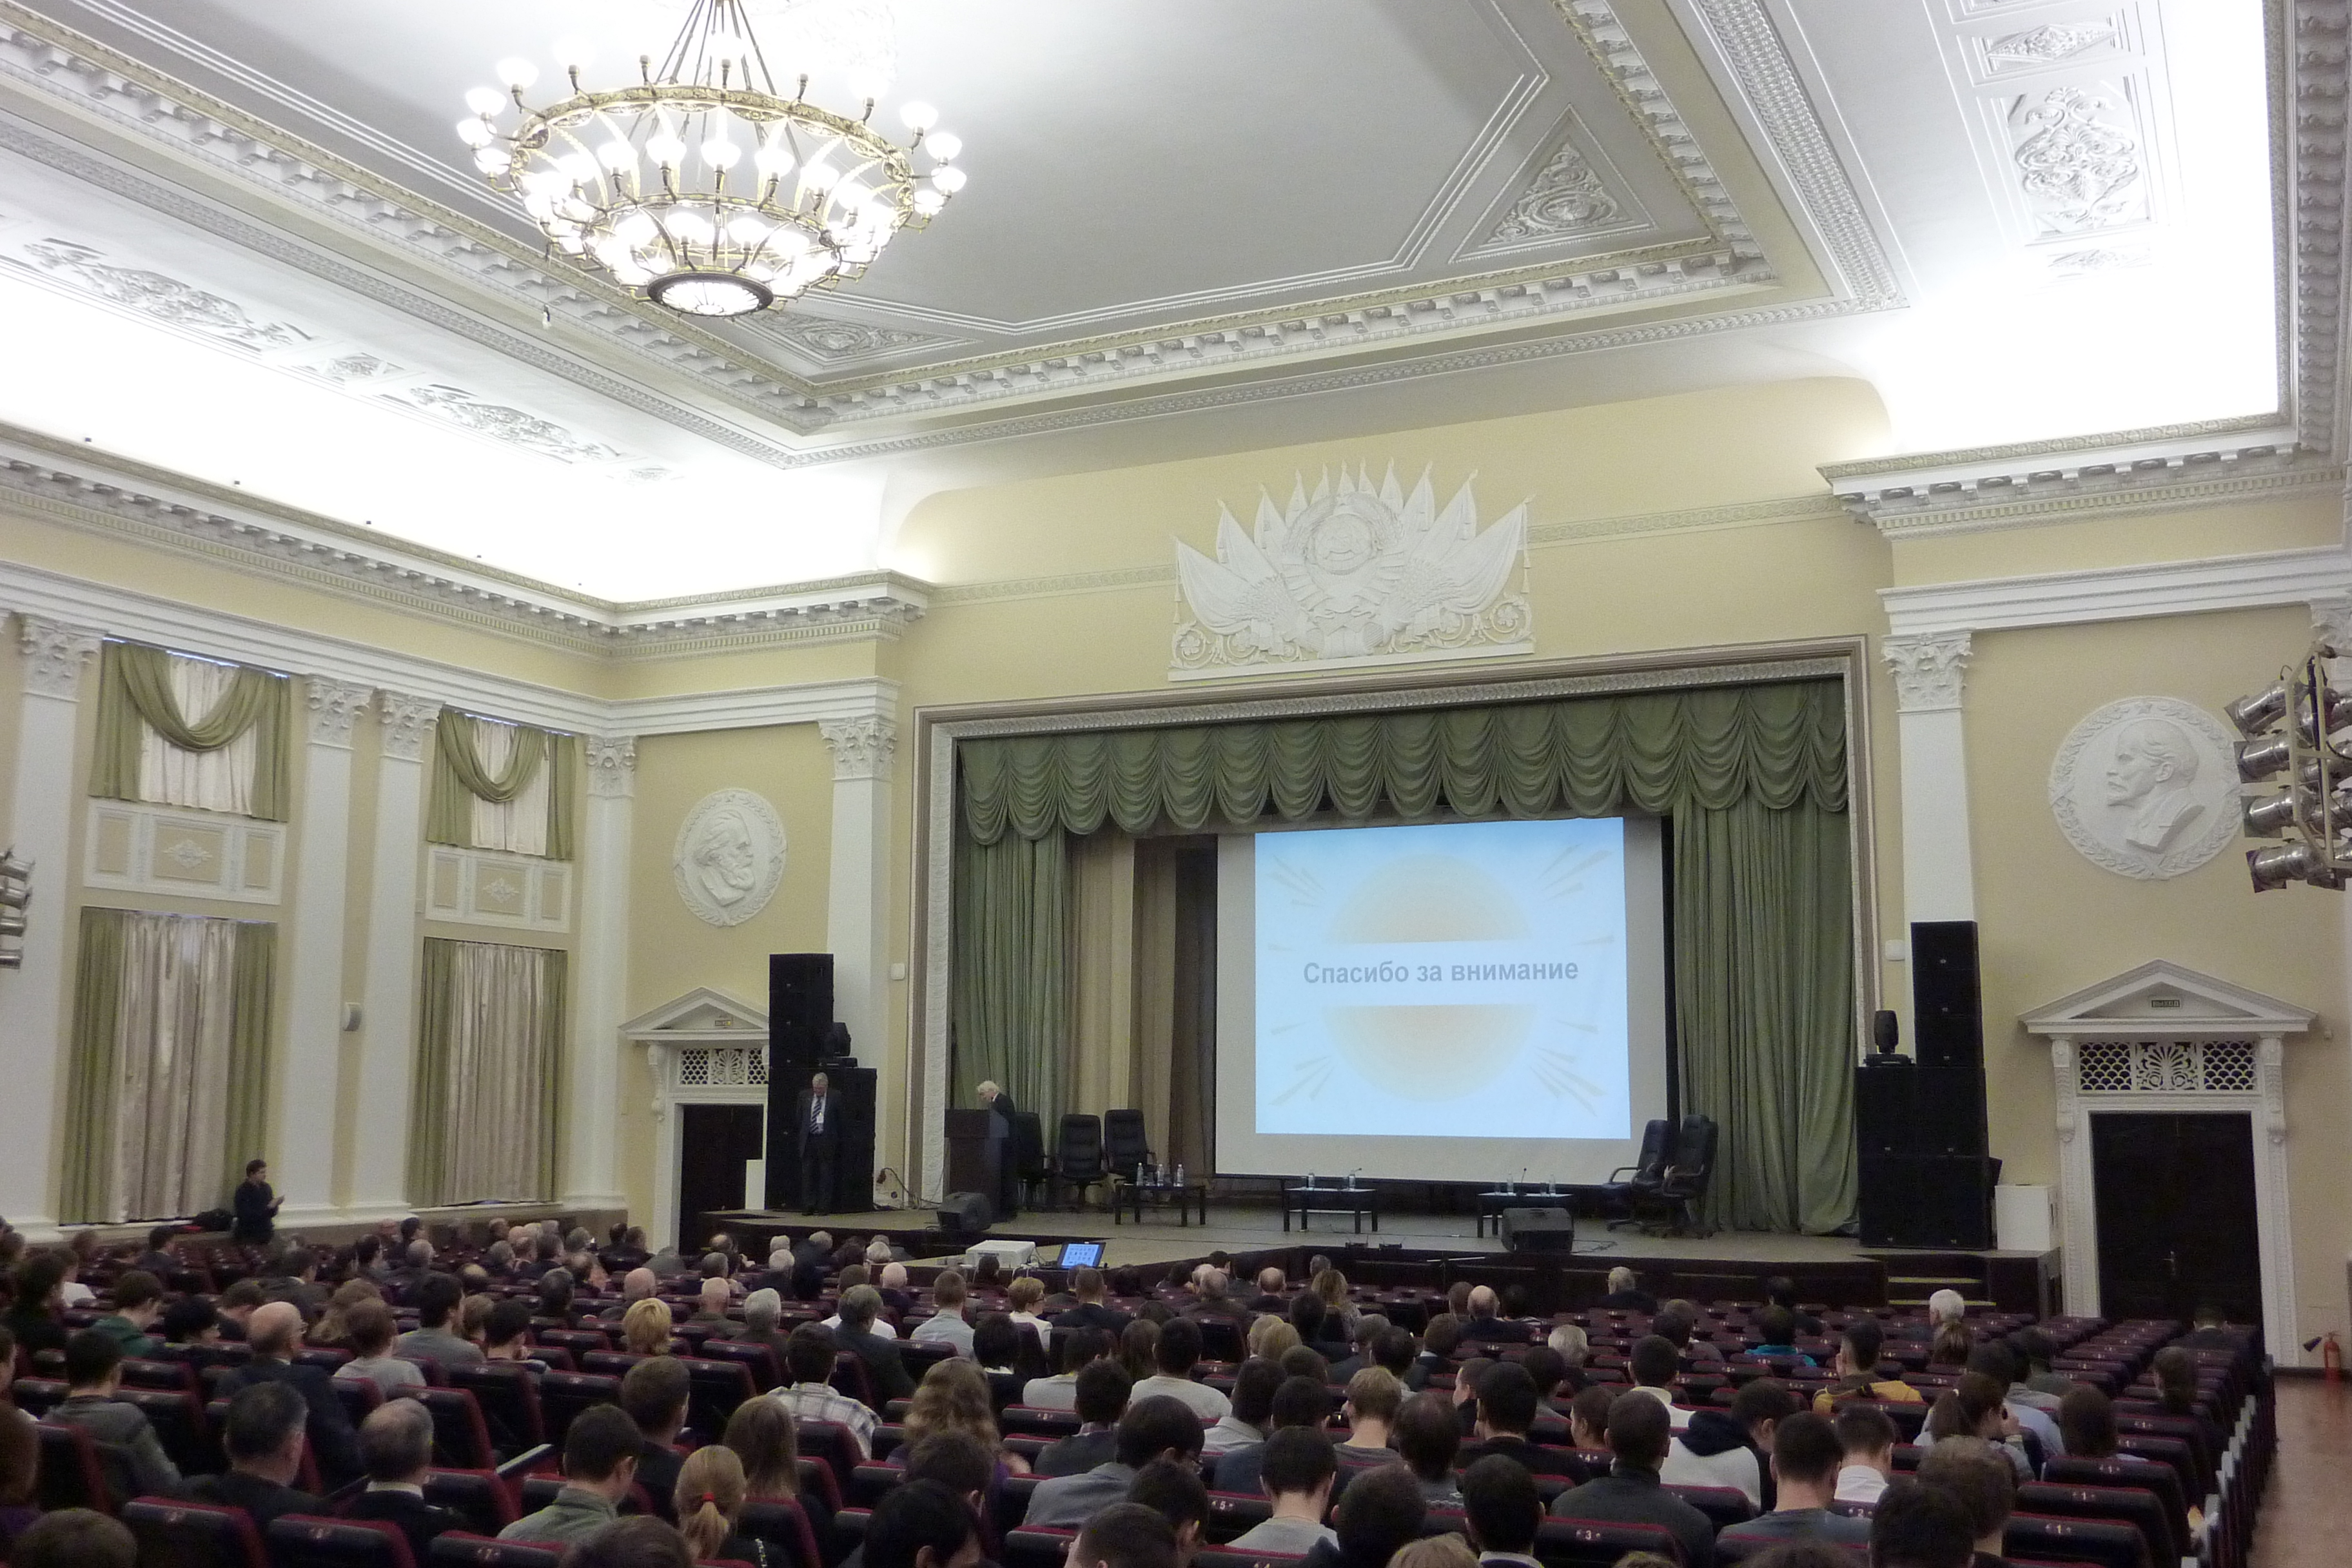 Festveranstaltung in der Großen Aula der Uraler Föderalen Universität